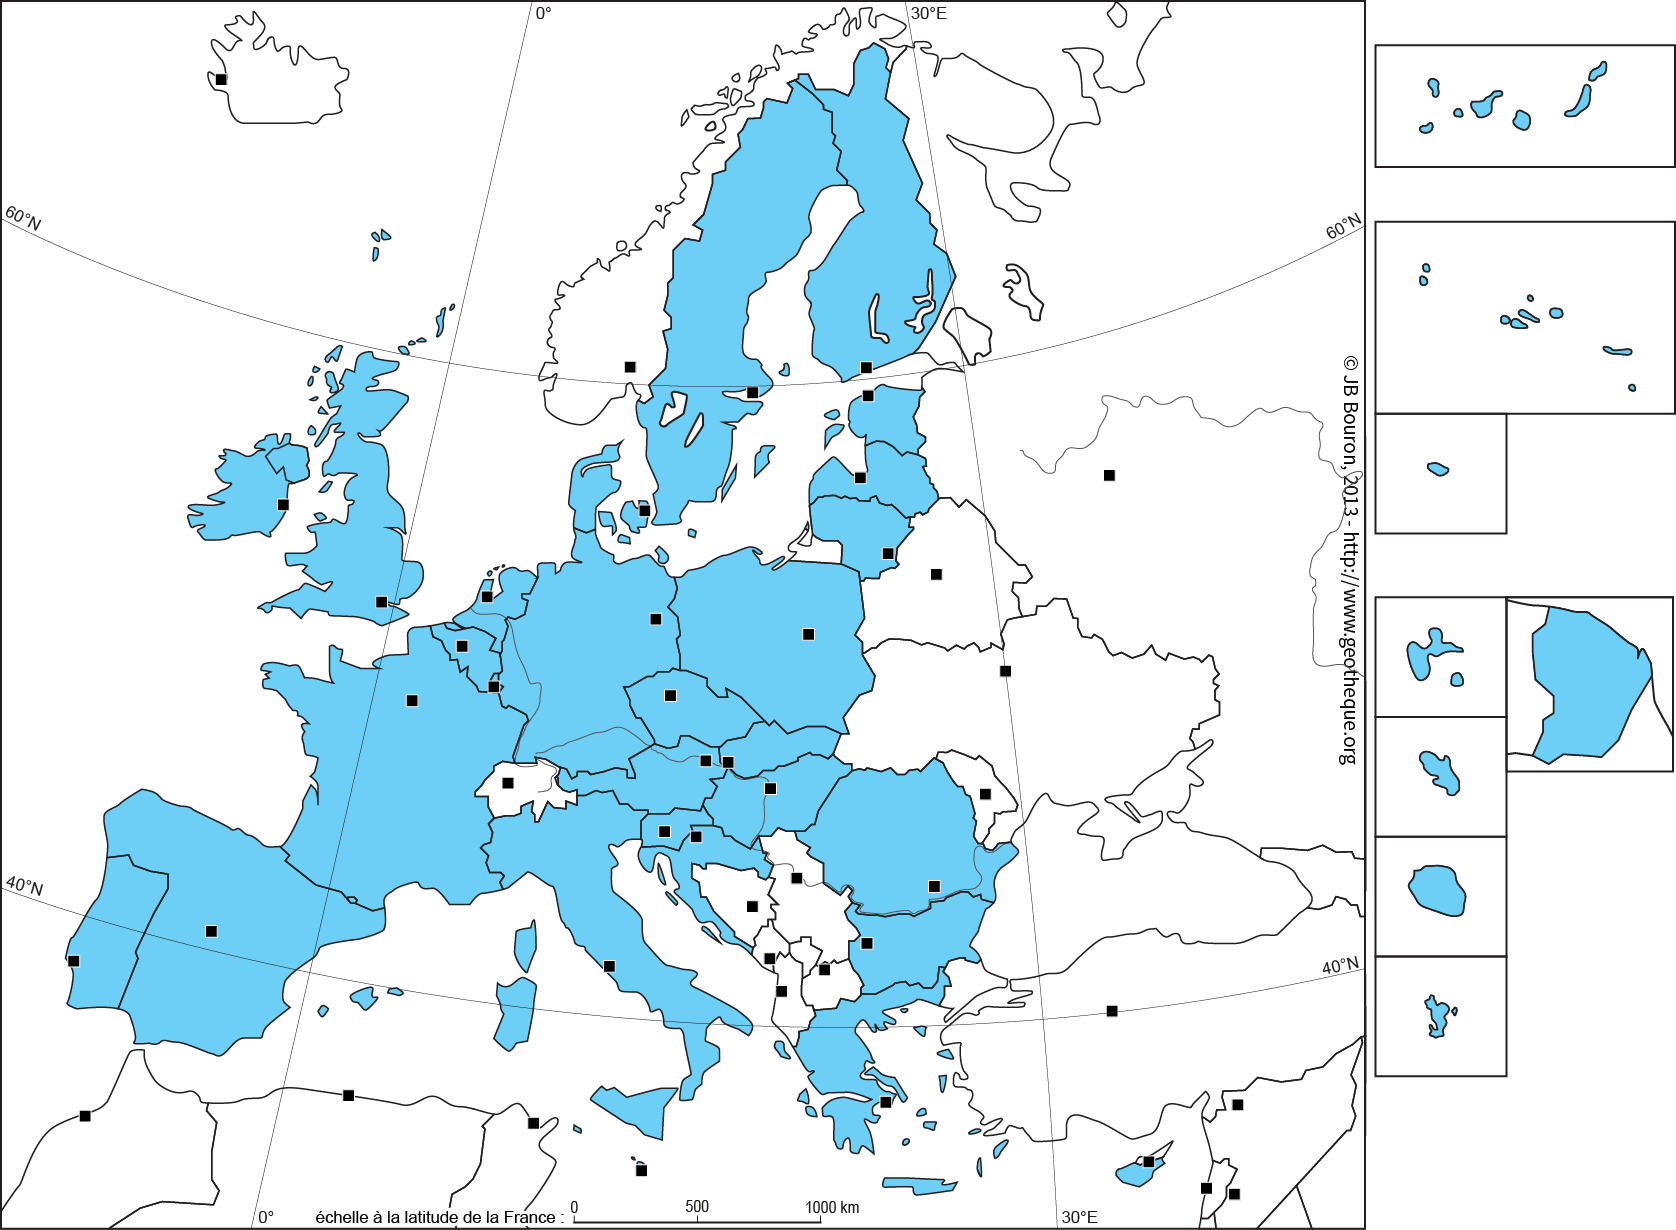 Fond De Carte De L&amp;#039;union Européenne À 28 - Ue28 - Eu28 Map tout Carte Union Européenne 28 Pays 